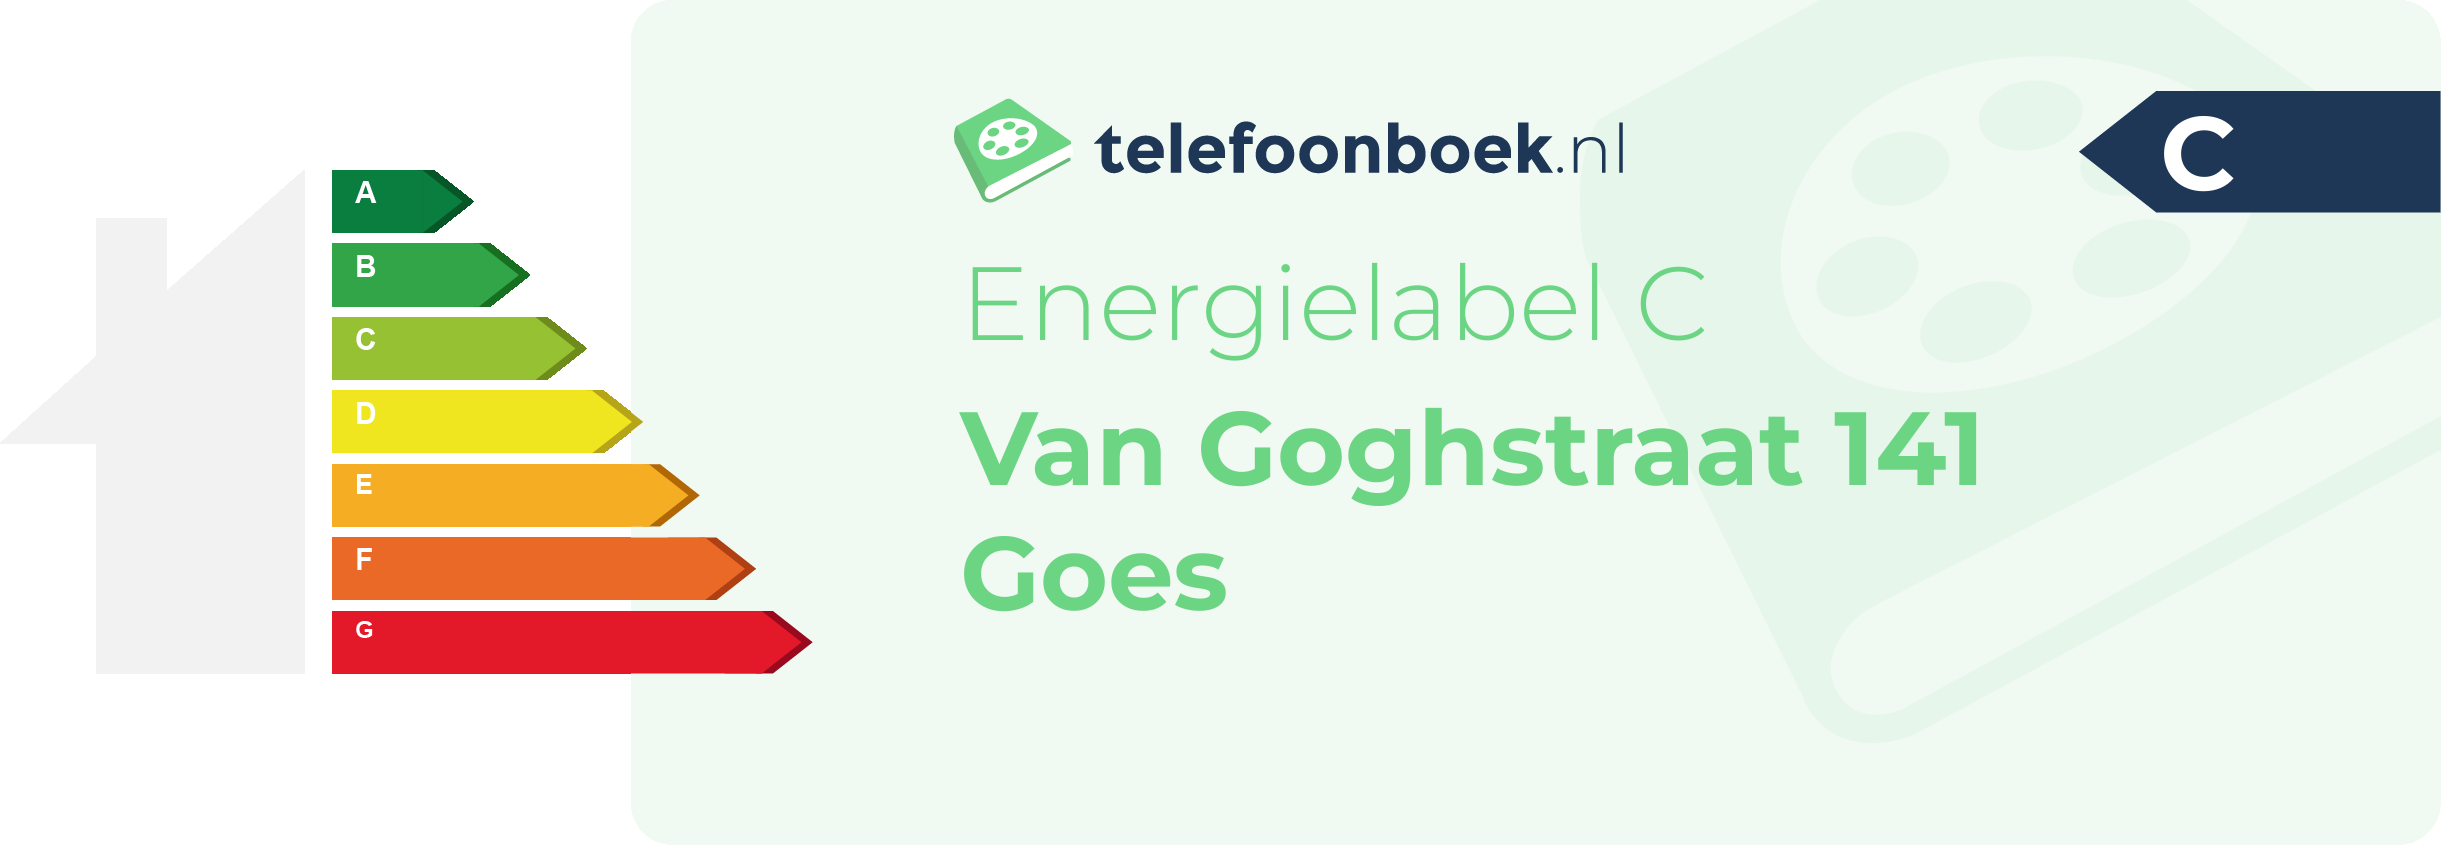 Energielabel Van Goghstraat 141 Goes